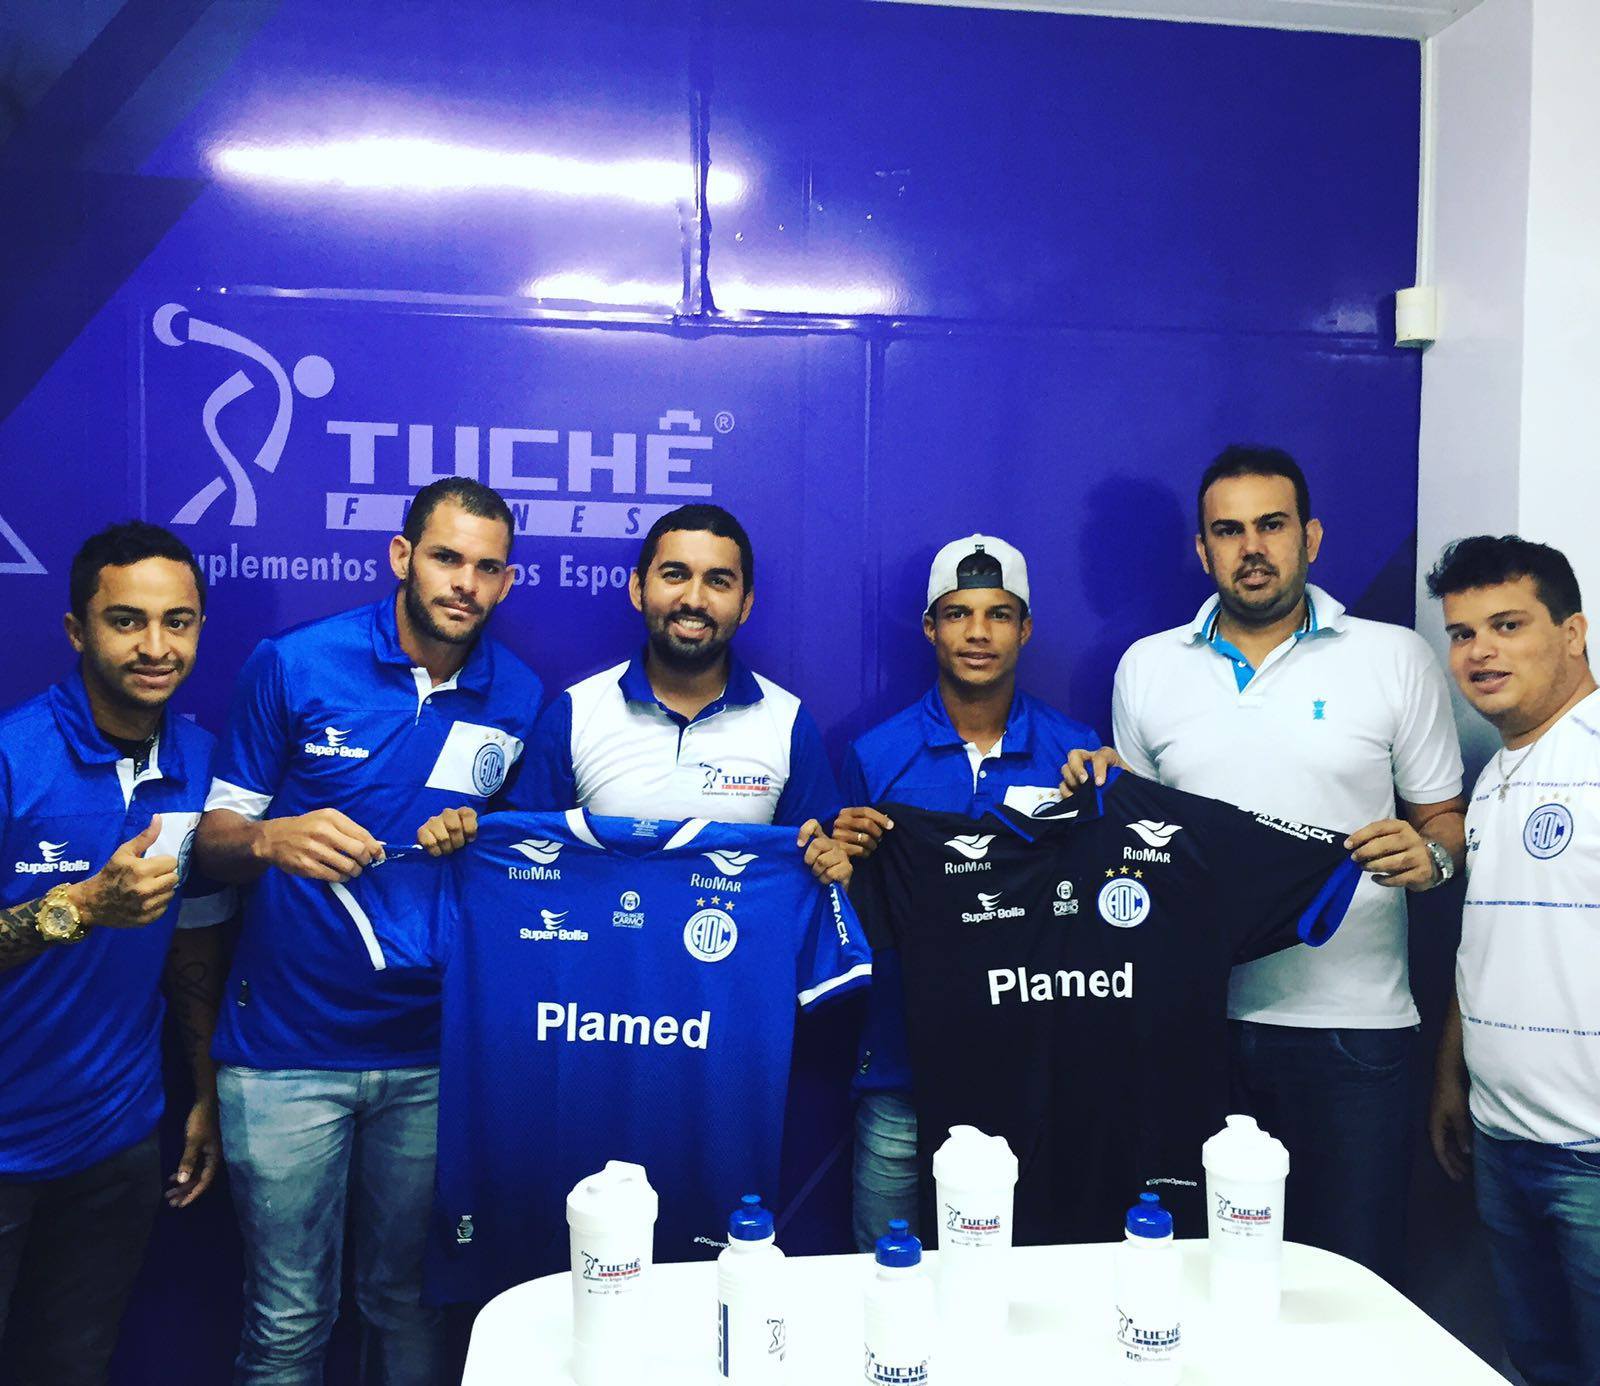 O Confiança, maior clube de futebol do estado, agora fechou com a maior rede de lojas de Suplementação esportiva de Sergipe, a Tuchê Fitness.